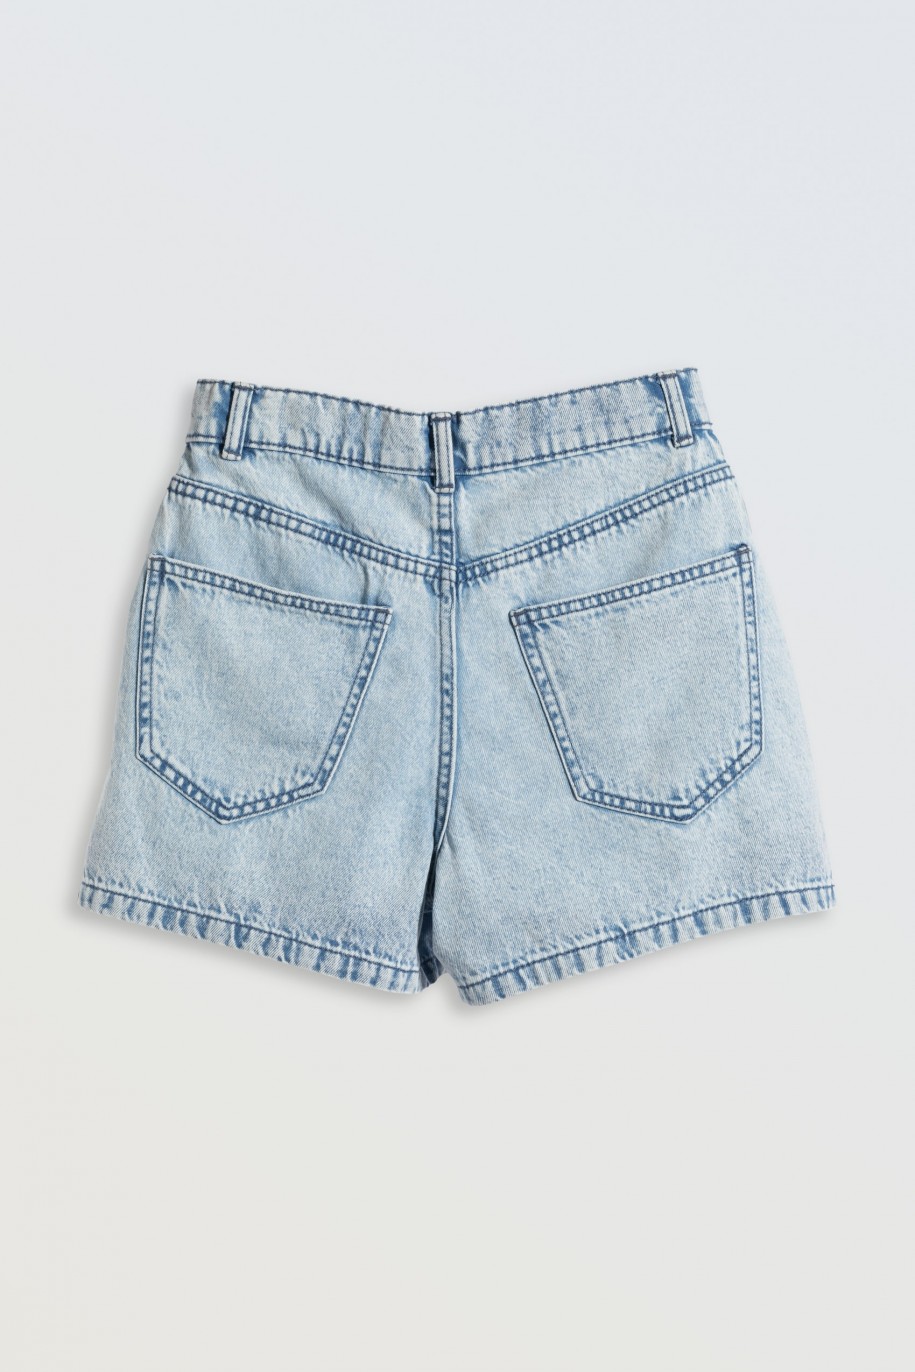 Jasnoniebieskie krótkie spodenki jeansowe - 46573